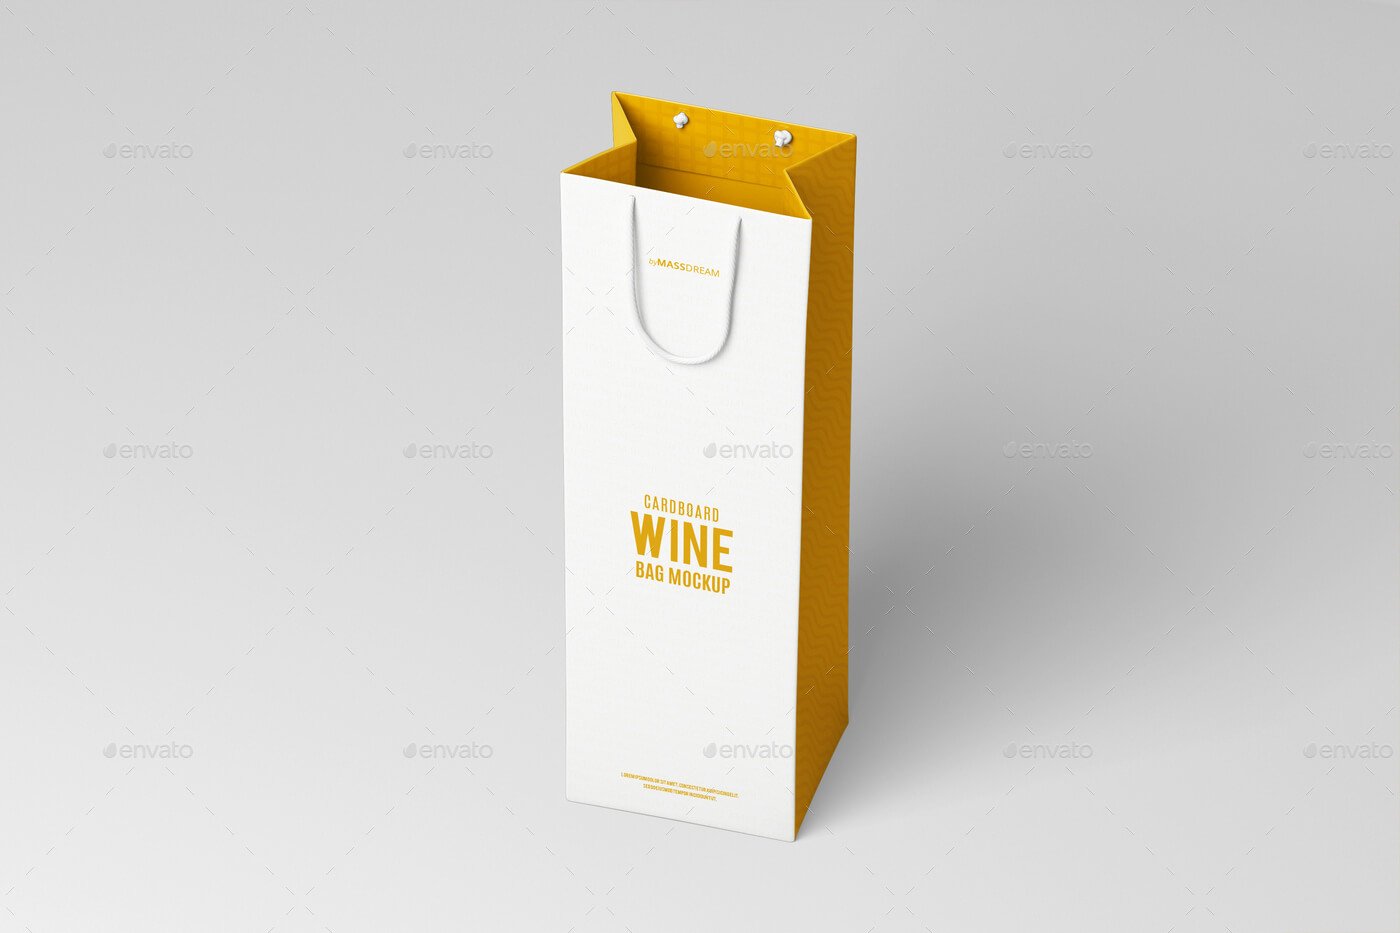 Cardboard Wine Bag Mock-Up